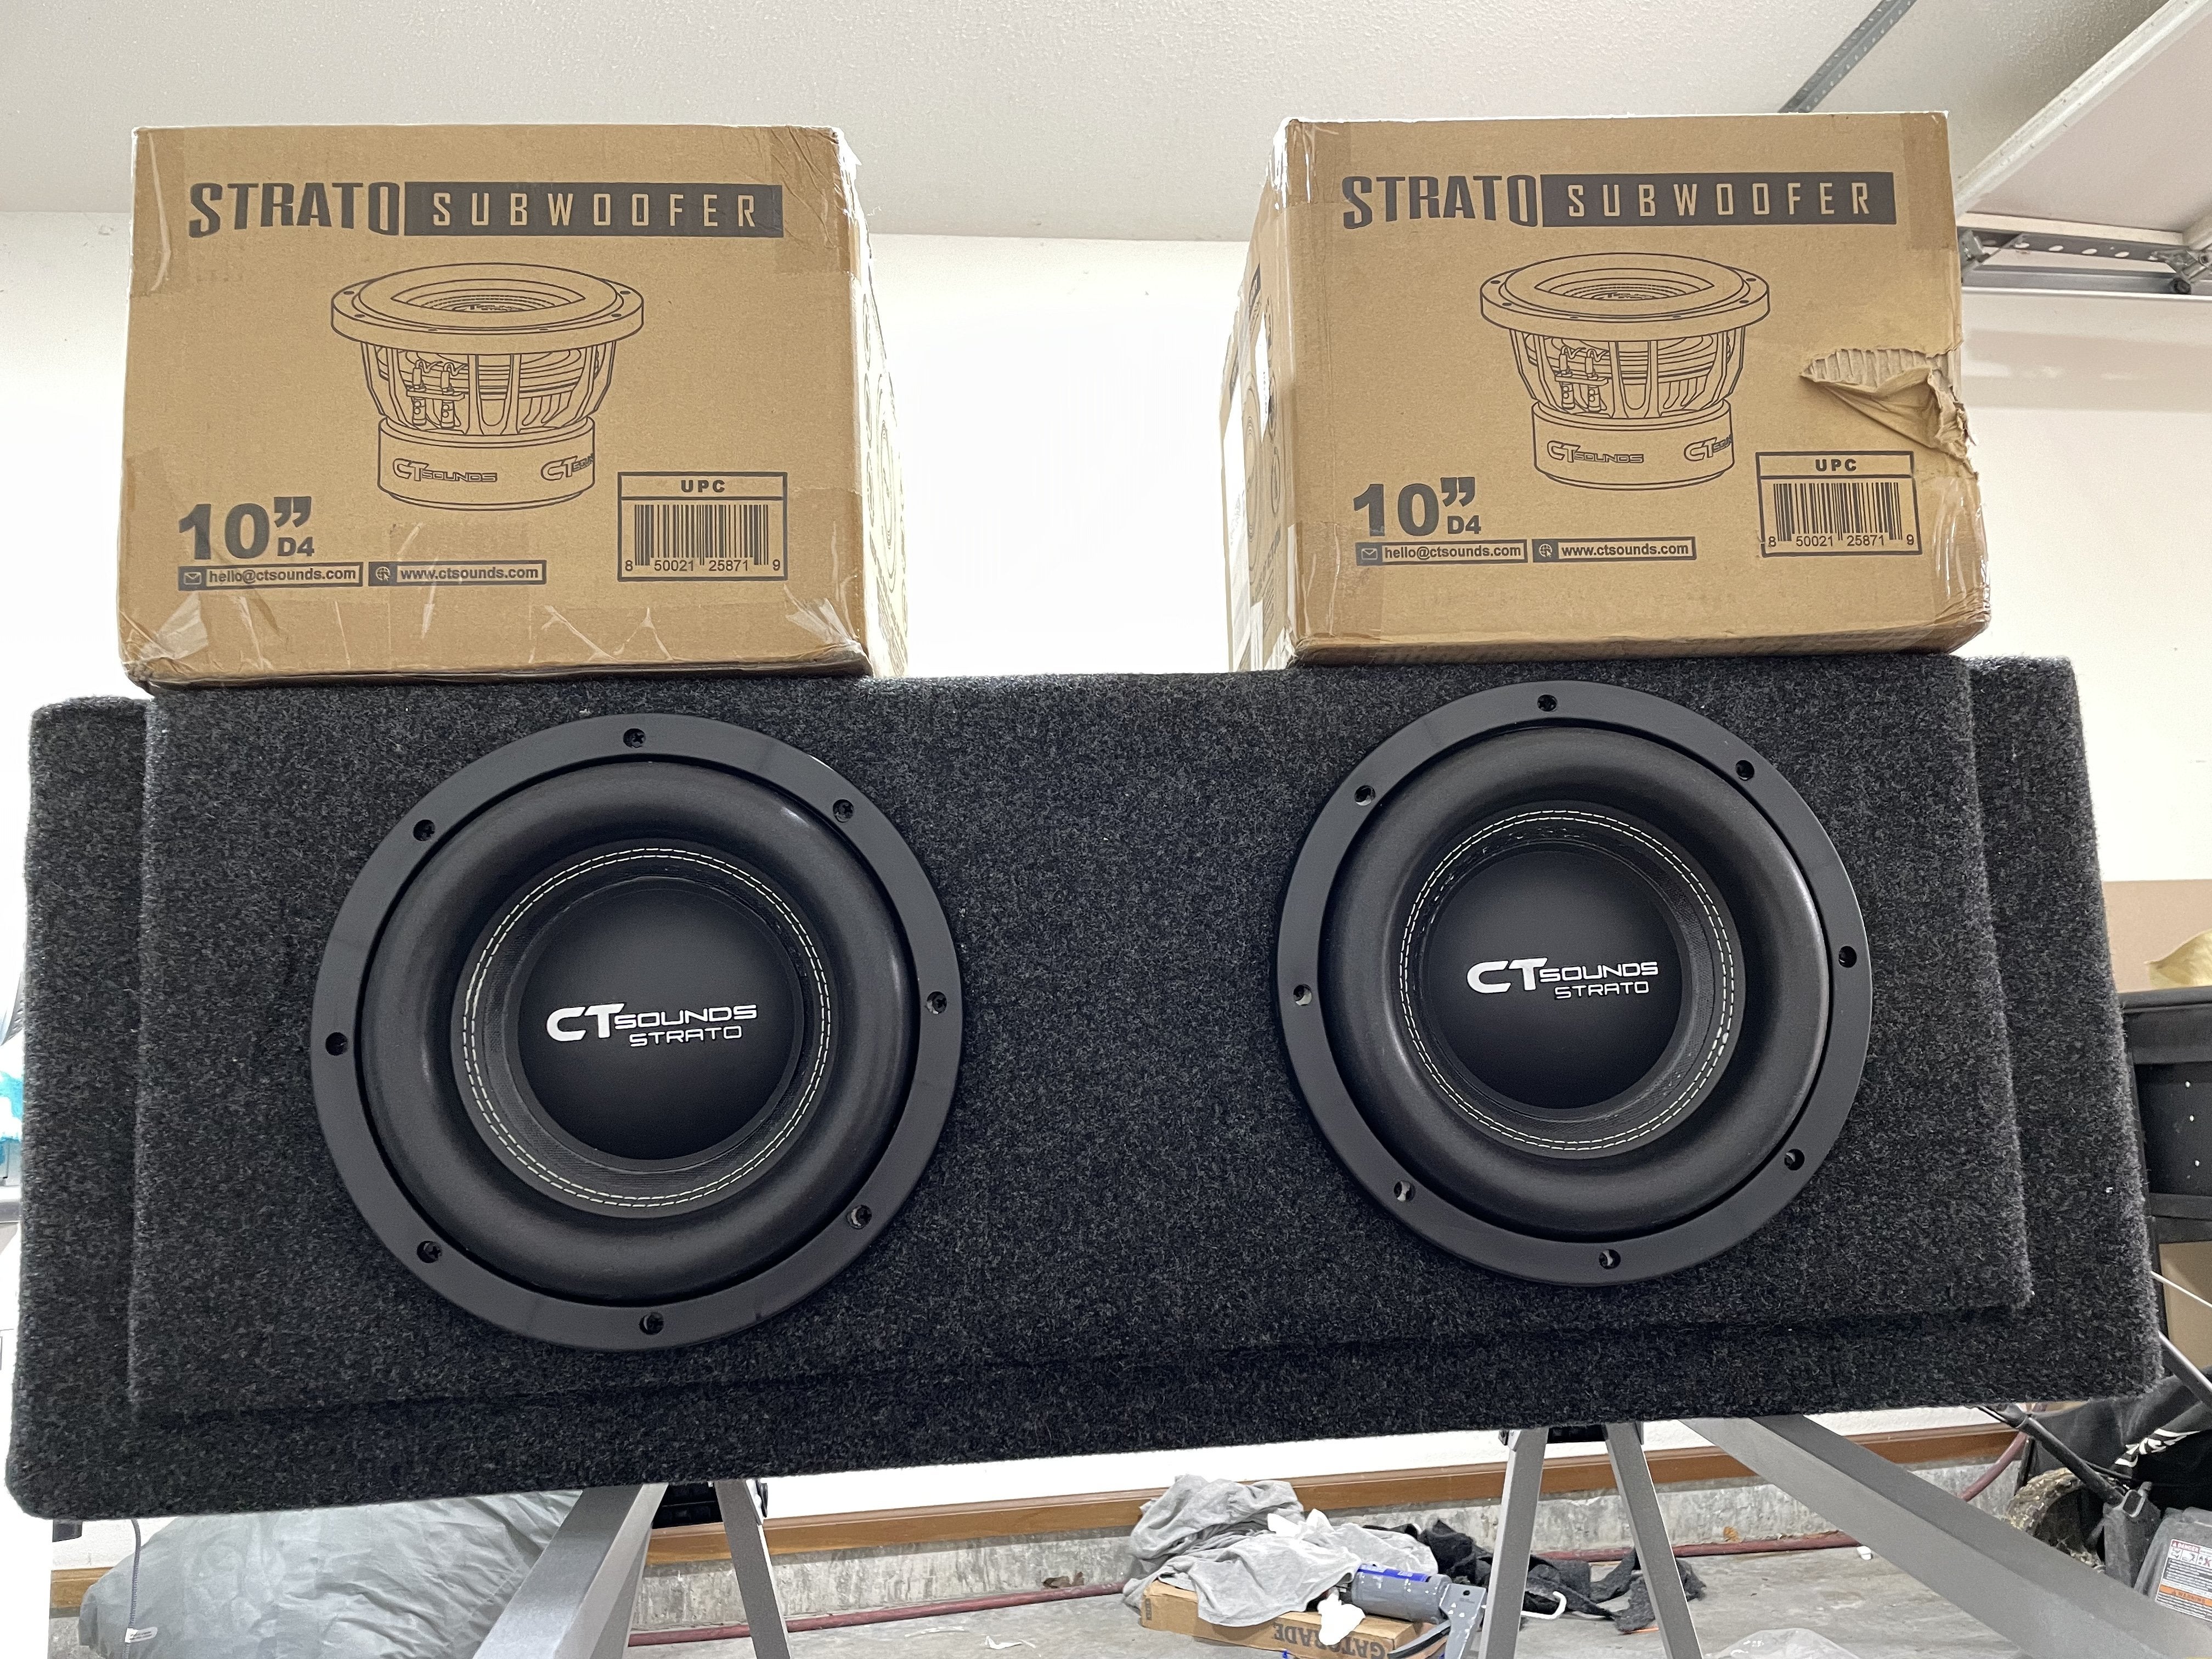 CT Sounds Strato 10” sub X 2 in box